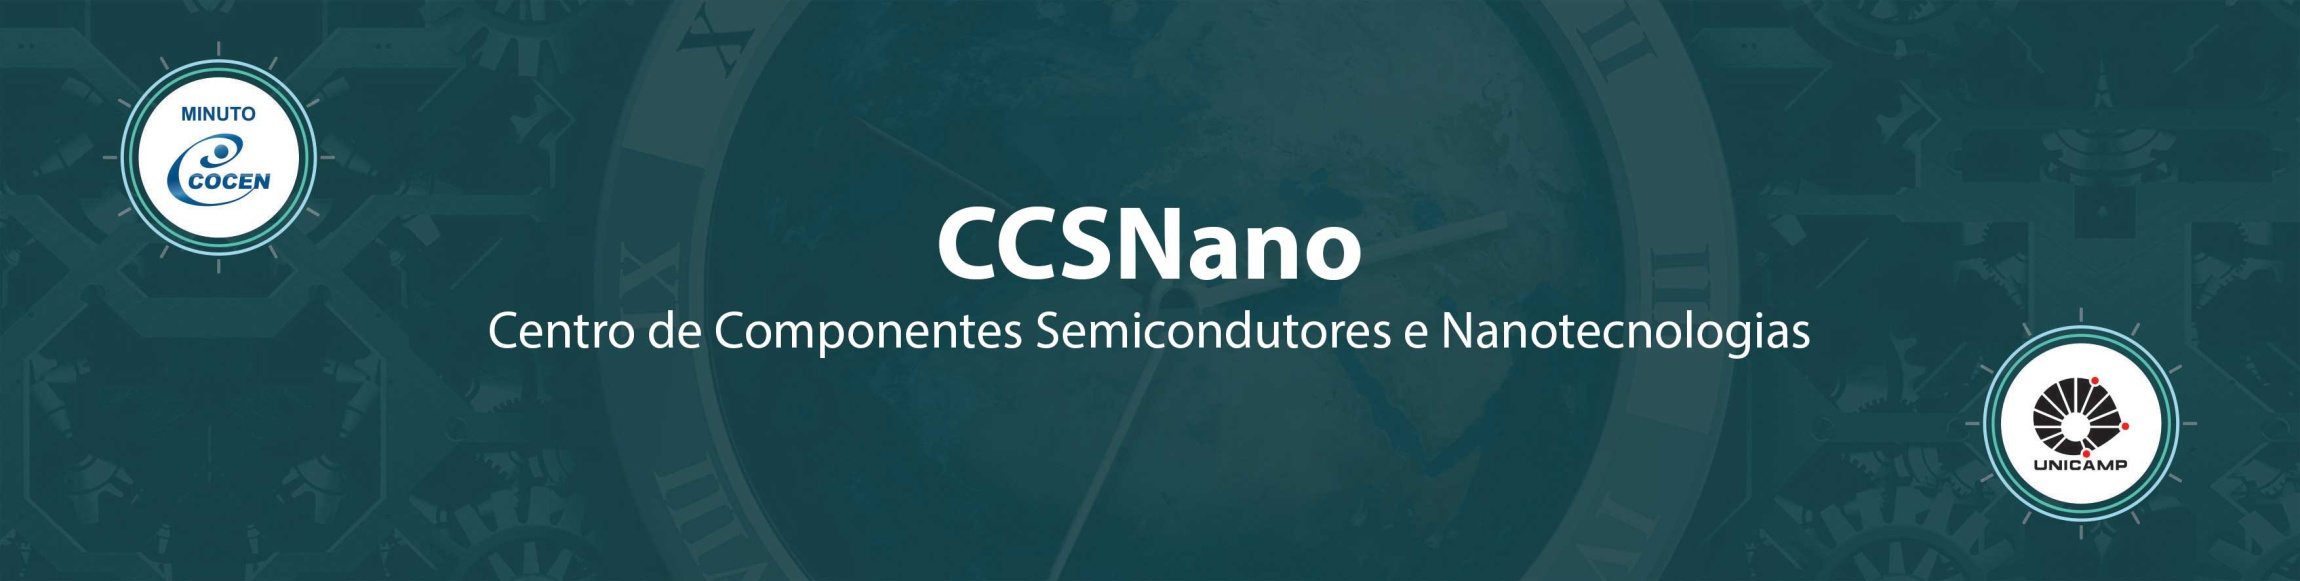 Imagem: Minuto Cocen - CCSNano - Centro de Componentes Semicondutores e Nanotecnologias